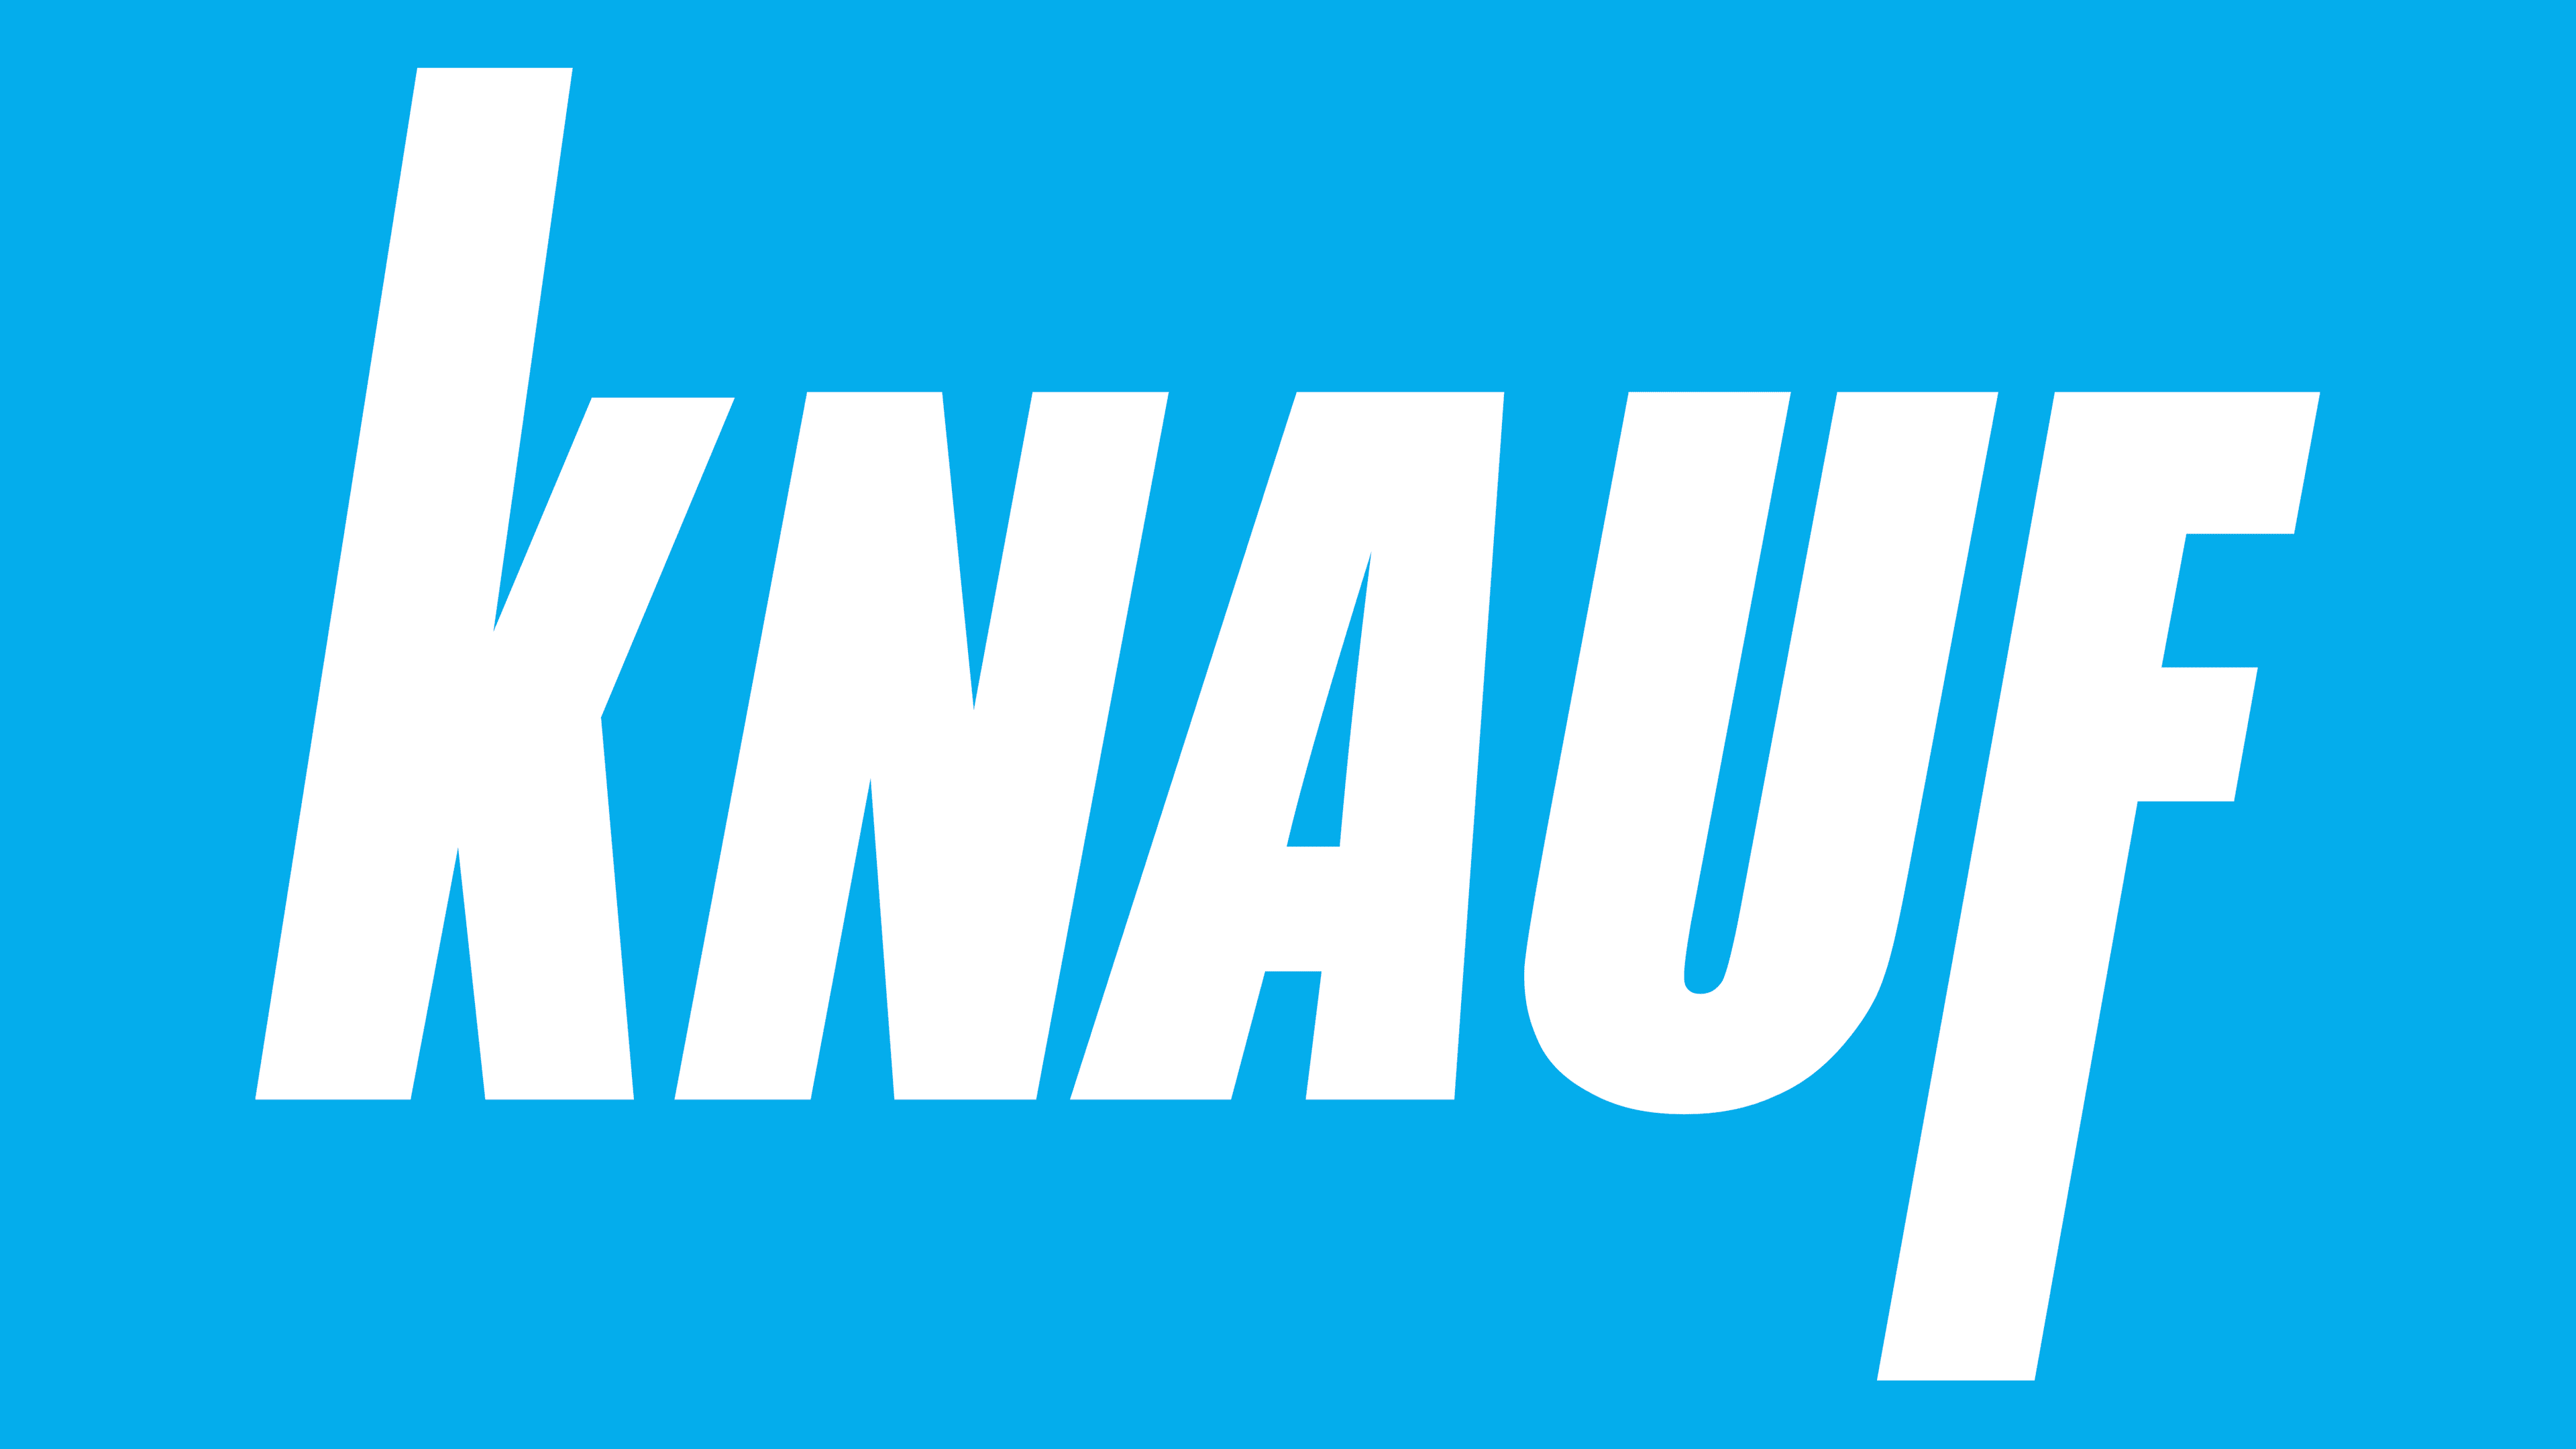 knauf-logo-1